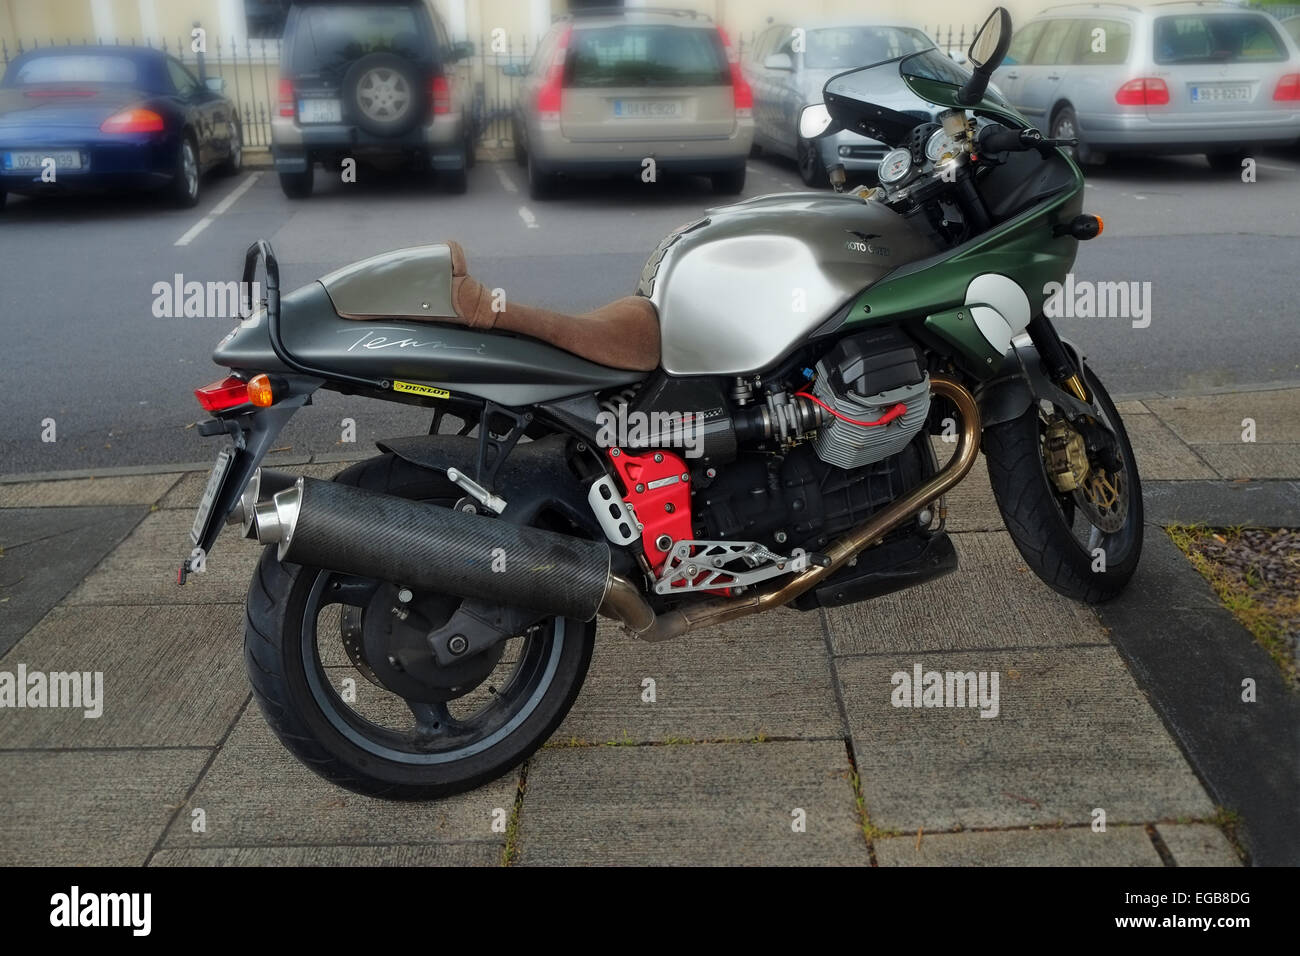 2 cylindres puissant Italian Moto Guzzi Cafe Racer motorcycle garé dans une rue de Dublin Irlande Banque D'Images